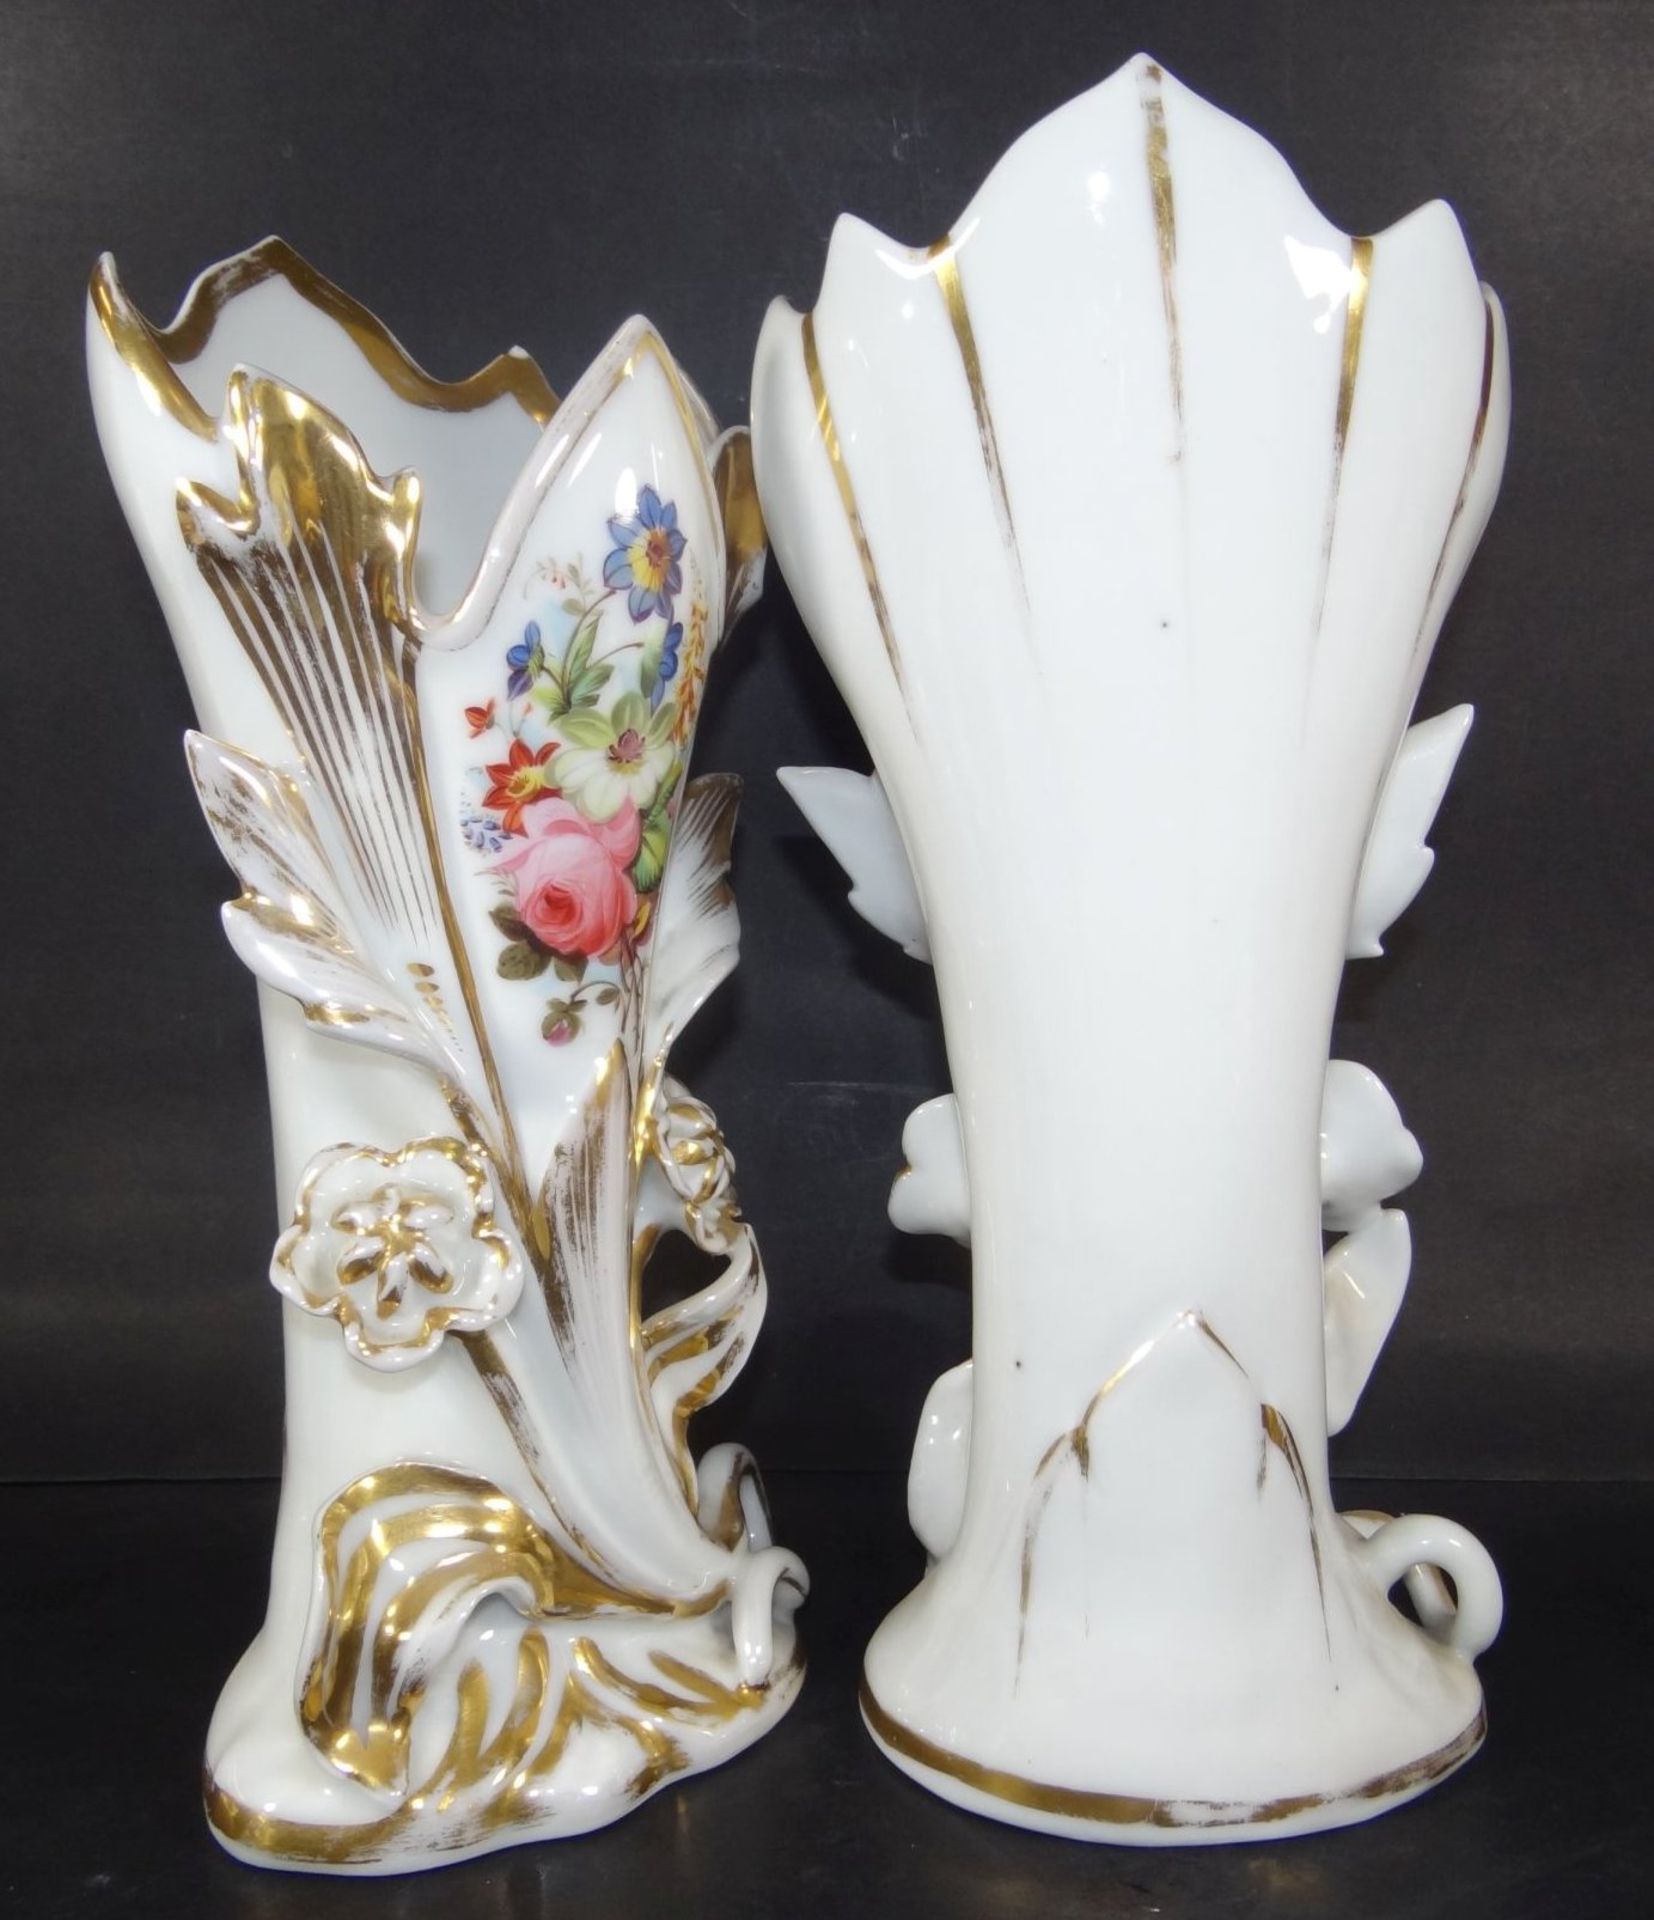 Paar hohe Biedermeier-Vasen um 1850, Blumenmalerei mit Goldstaffage, diese etwas berieben, ansonsten - Bild 4 aus 6